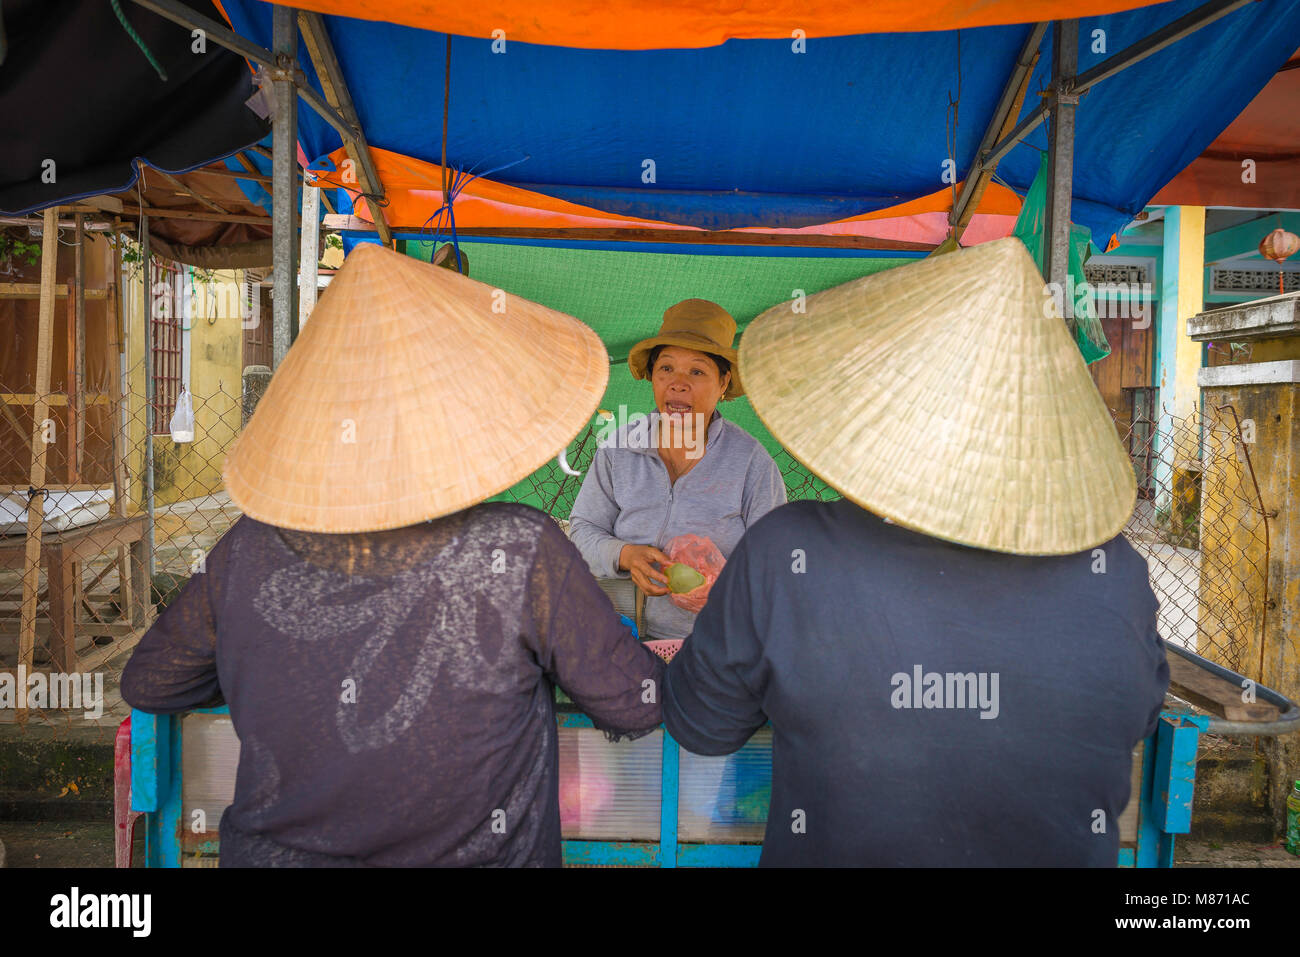 Frauen shopping Vietnam, zwei Vietnamesische Frauen mit konischen Hüten Frucht von einem flußufer Anbieter in Hoi An, Vietnam kaufen. Stockfoto